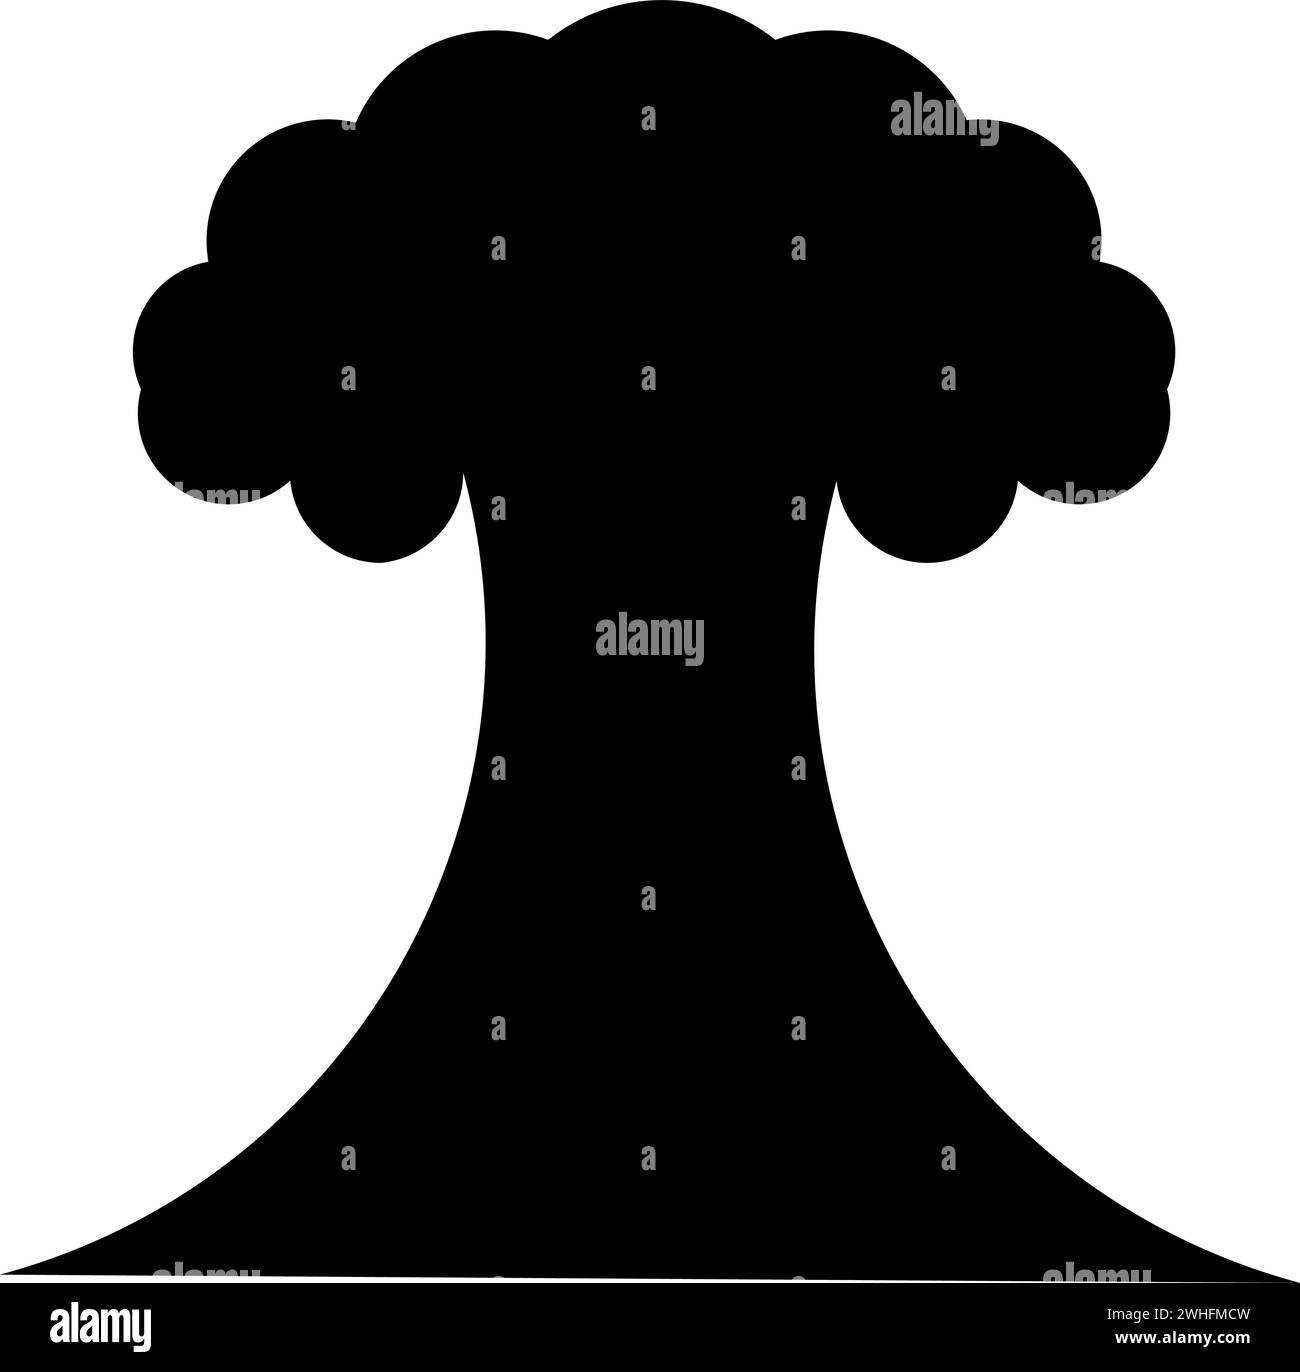 Explosion nucléaire éclatement champignon explosion icône de destruction explosive couleur noire illustration vectorielle image style plat simple Illustration de Vecteur